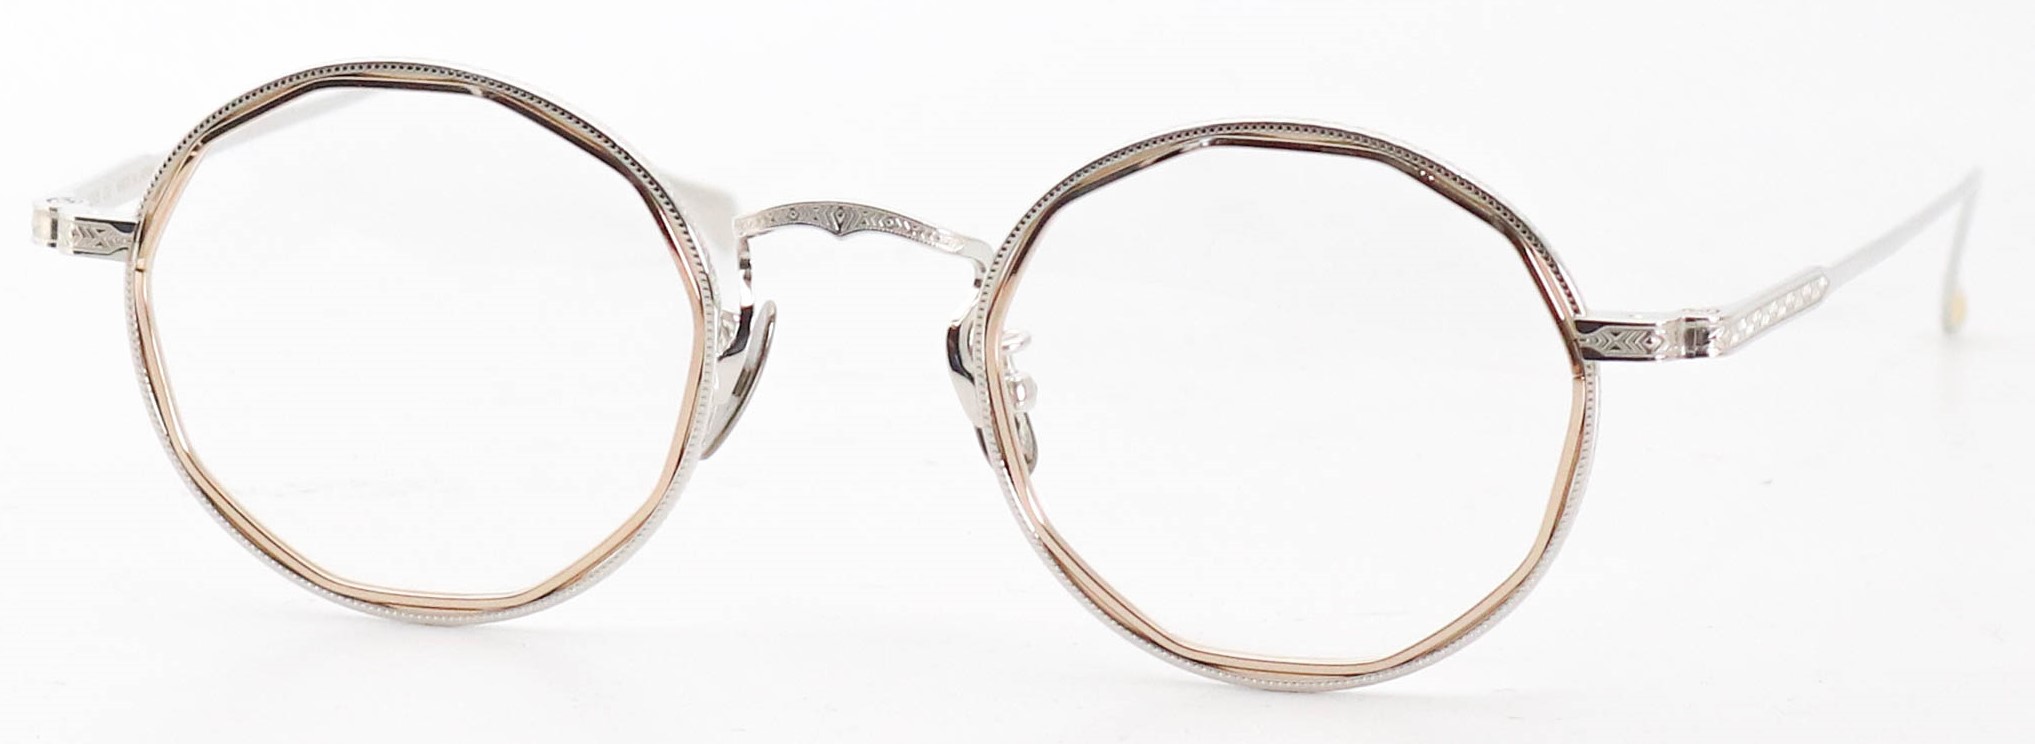 眼鏡のカラータイプC-2 Gold/Silver